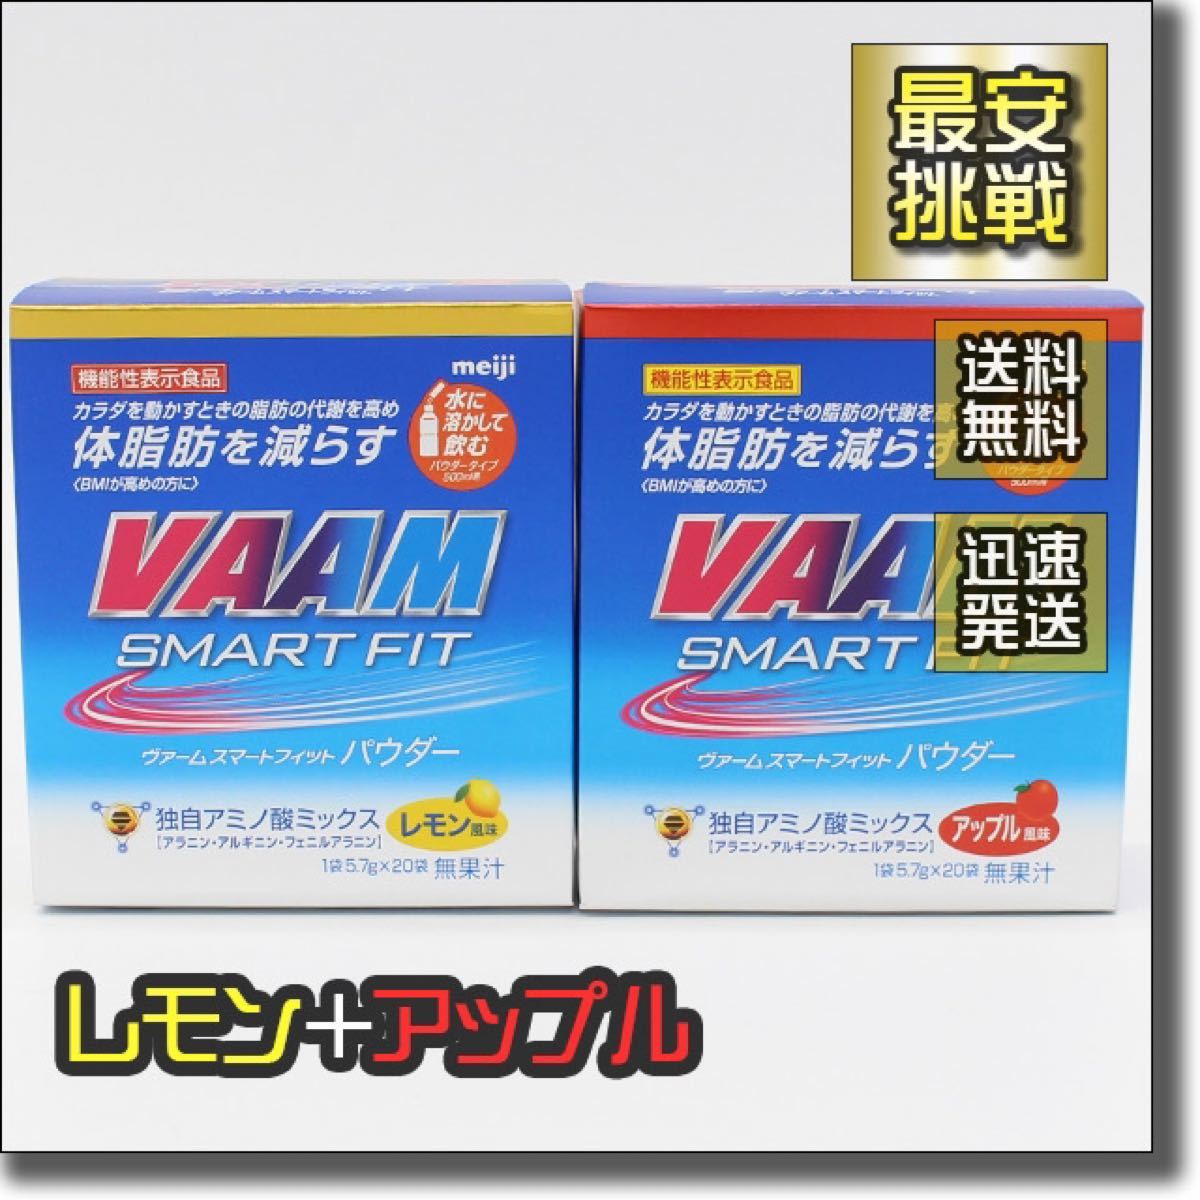 VAAM スマートフィットパウダーレモン風味 11箱セット - udonmap.com